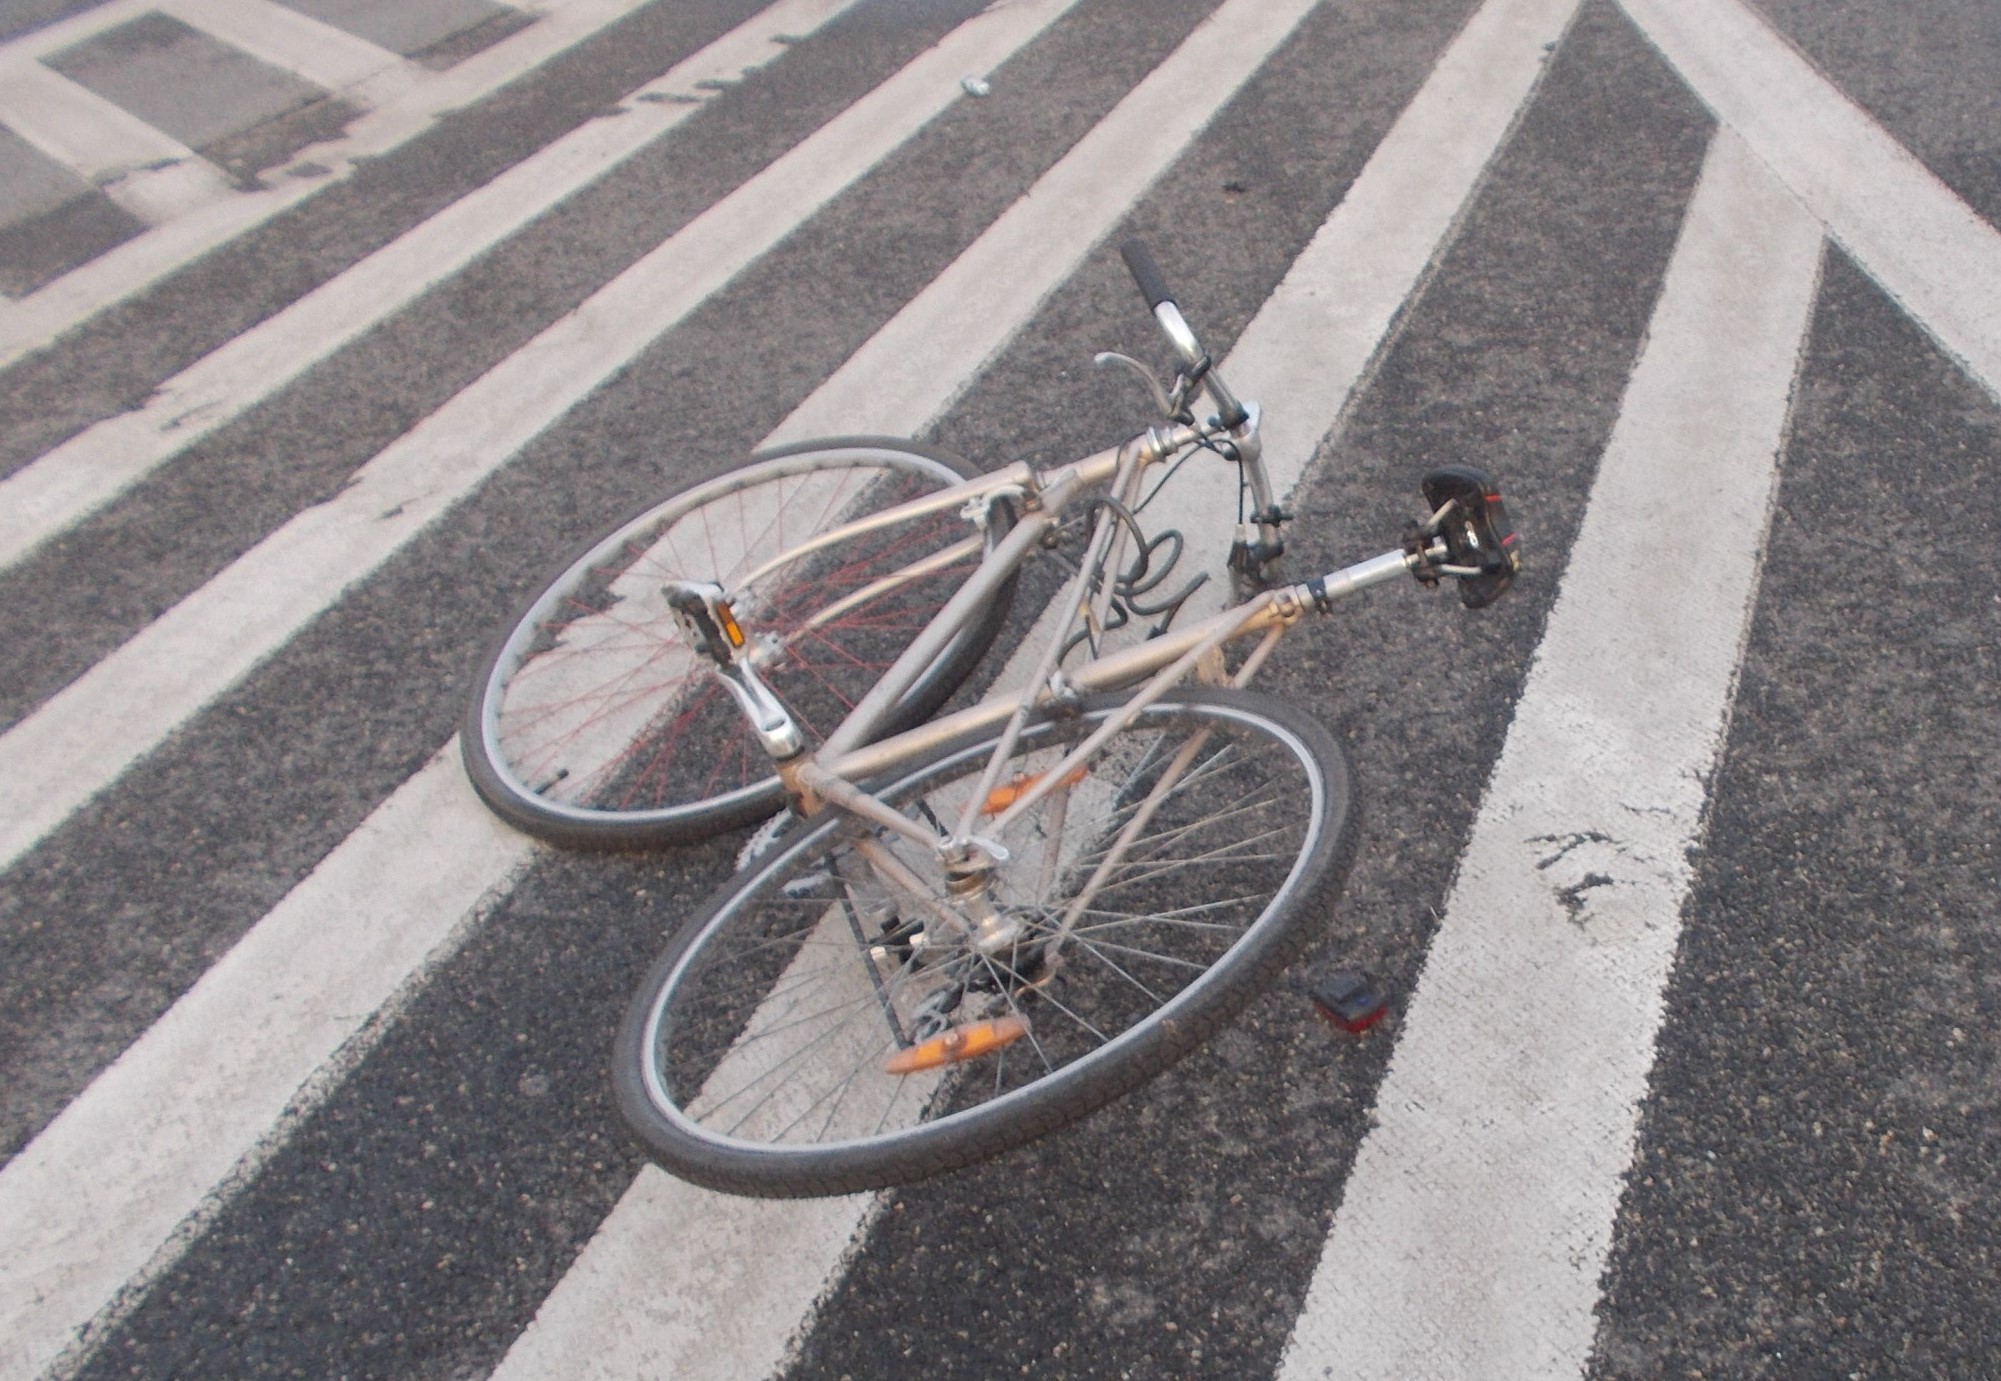 Lekko uszkodzony rower typu kolarzówka leży na jezdni (na powierzchni wyłączonej z ruchu).